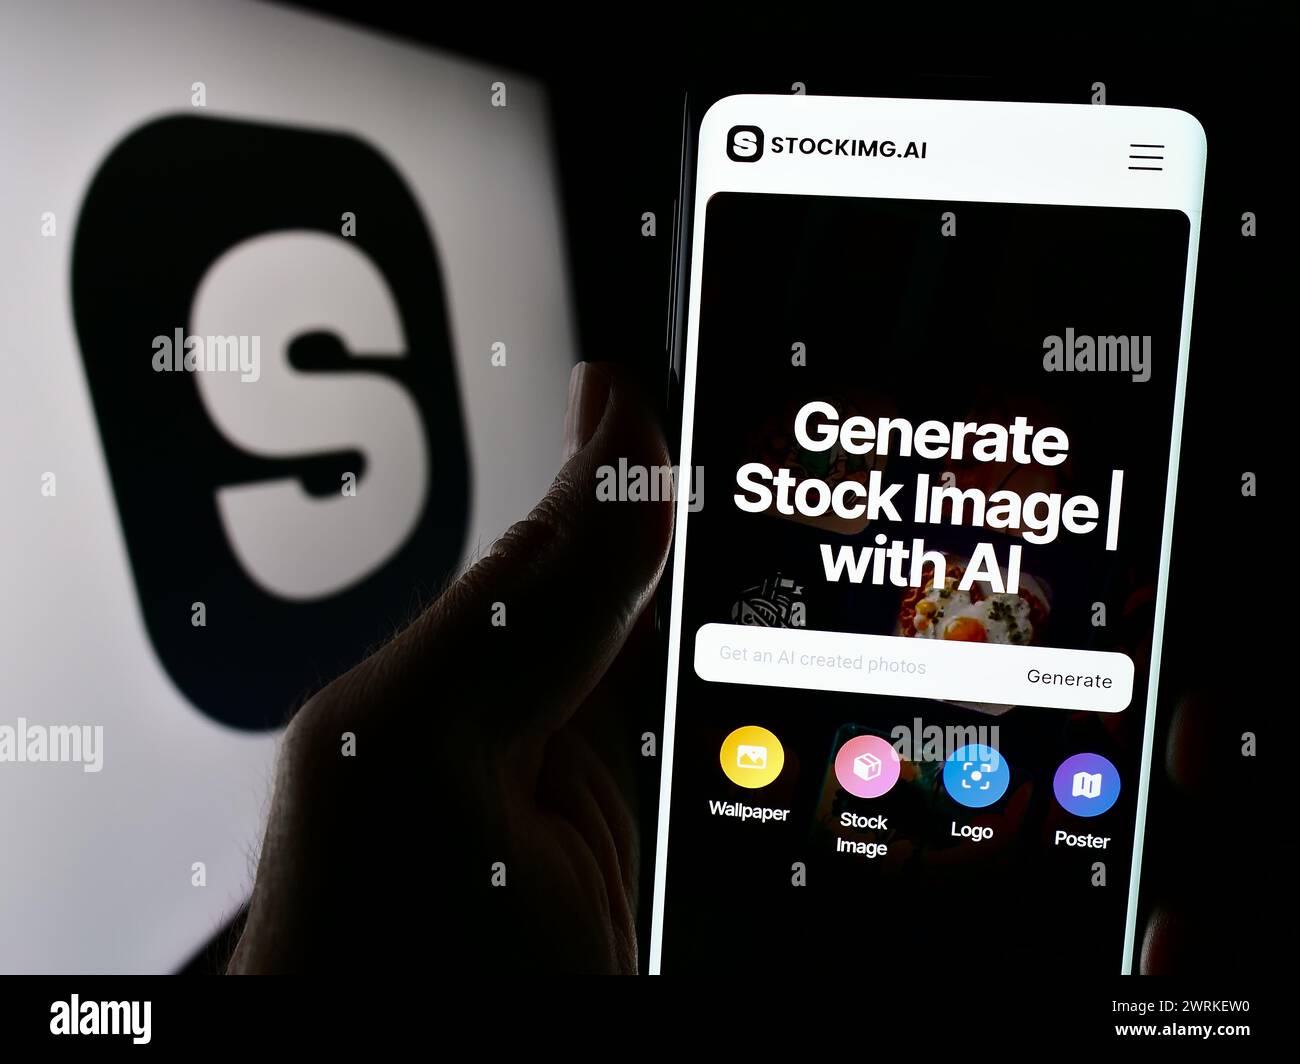 Handyhalter mit Webseite der Künstlichen Intelligenz Bildgenerierungsfirma Stockimg AI mit Logo. Konzentrieren Sie sich auf die Mitte des Telefondisplays. Stockfoto